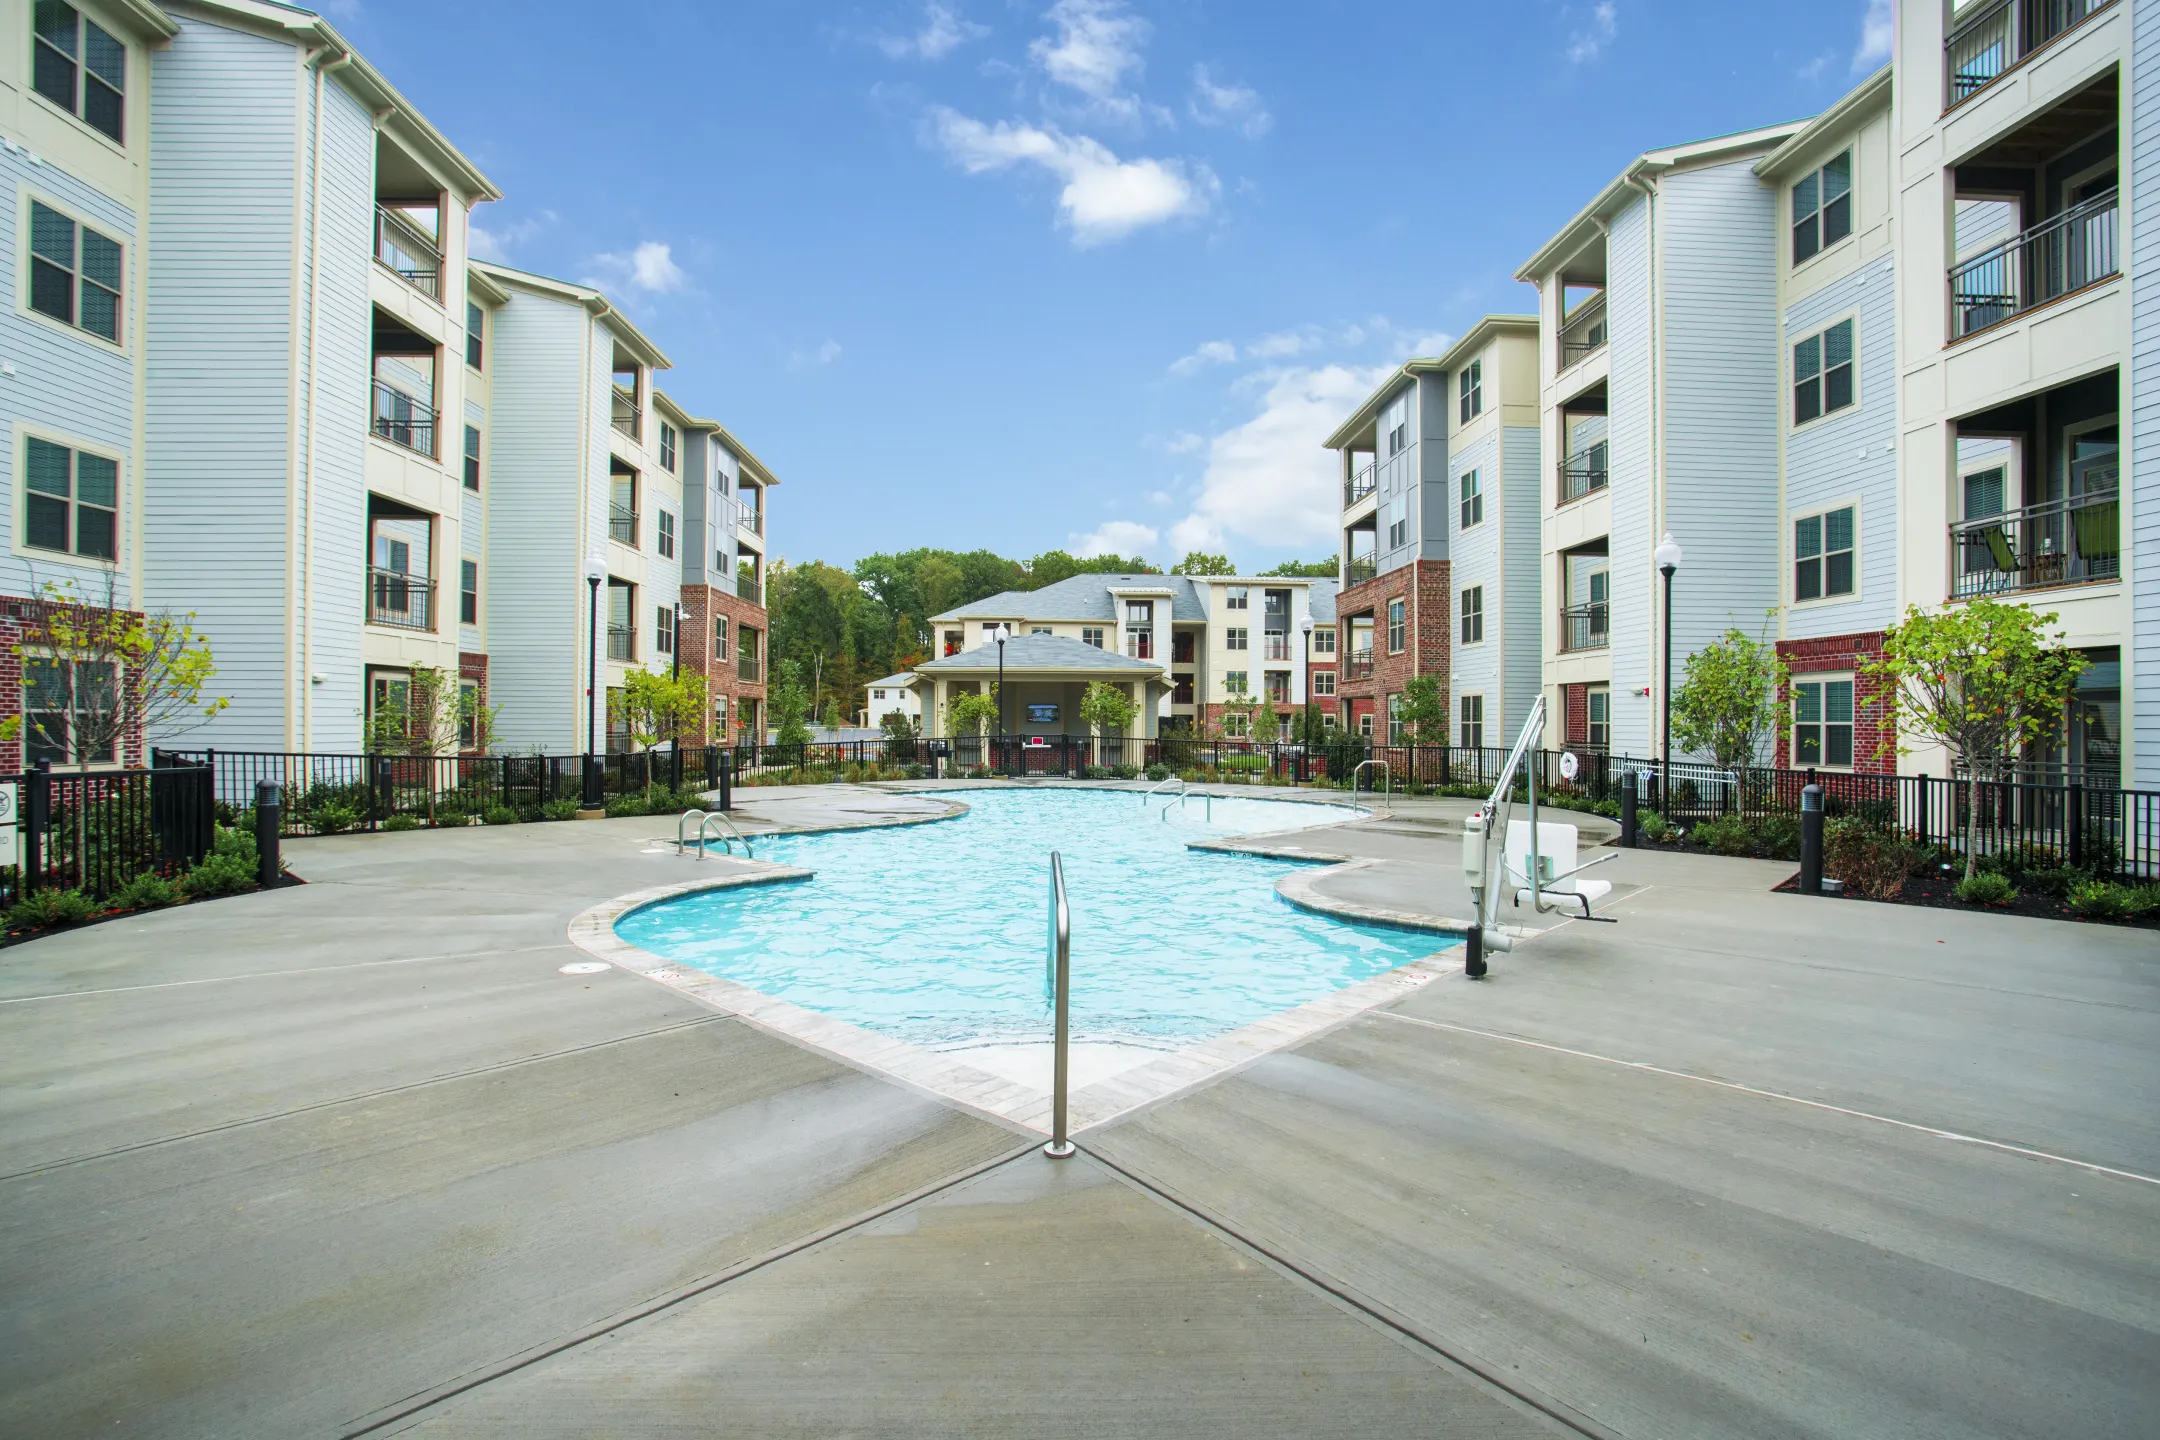 Pool - James River at Stony Point Apartments - Richmond, VA